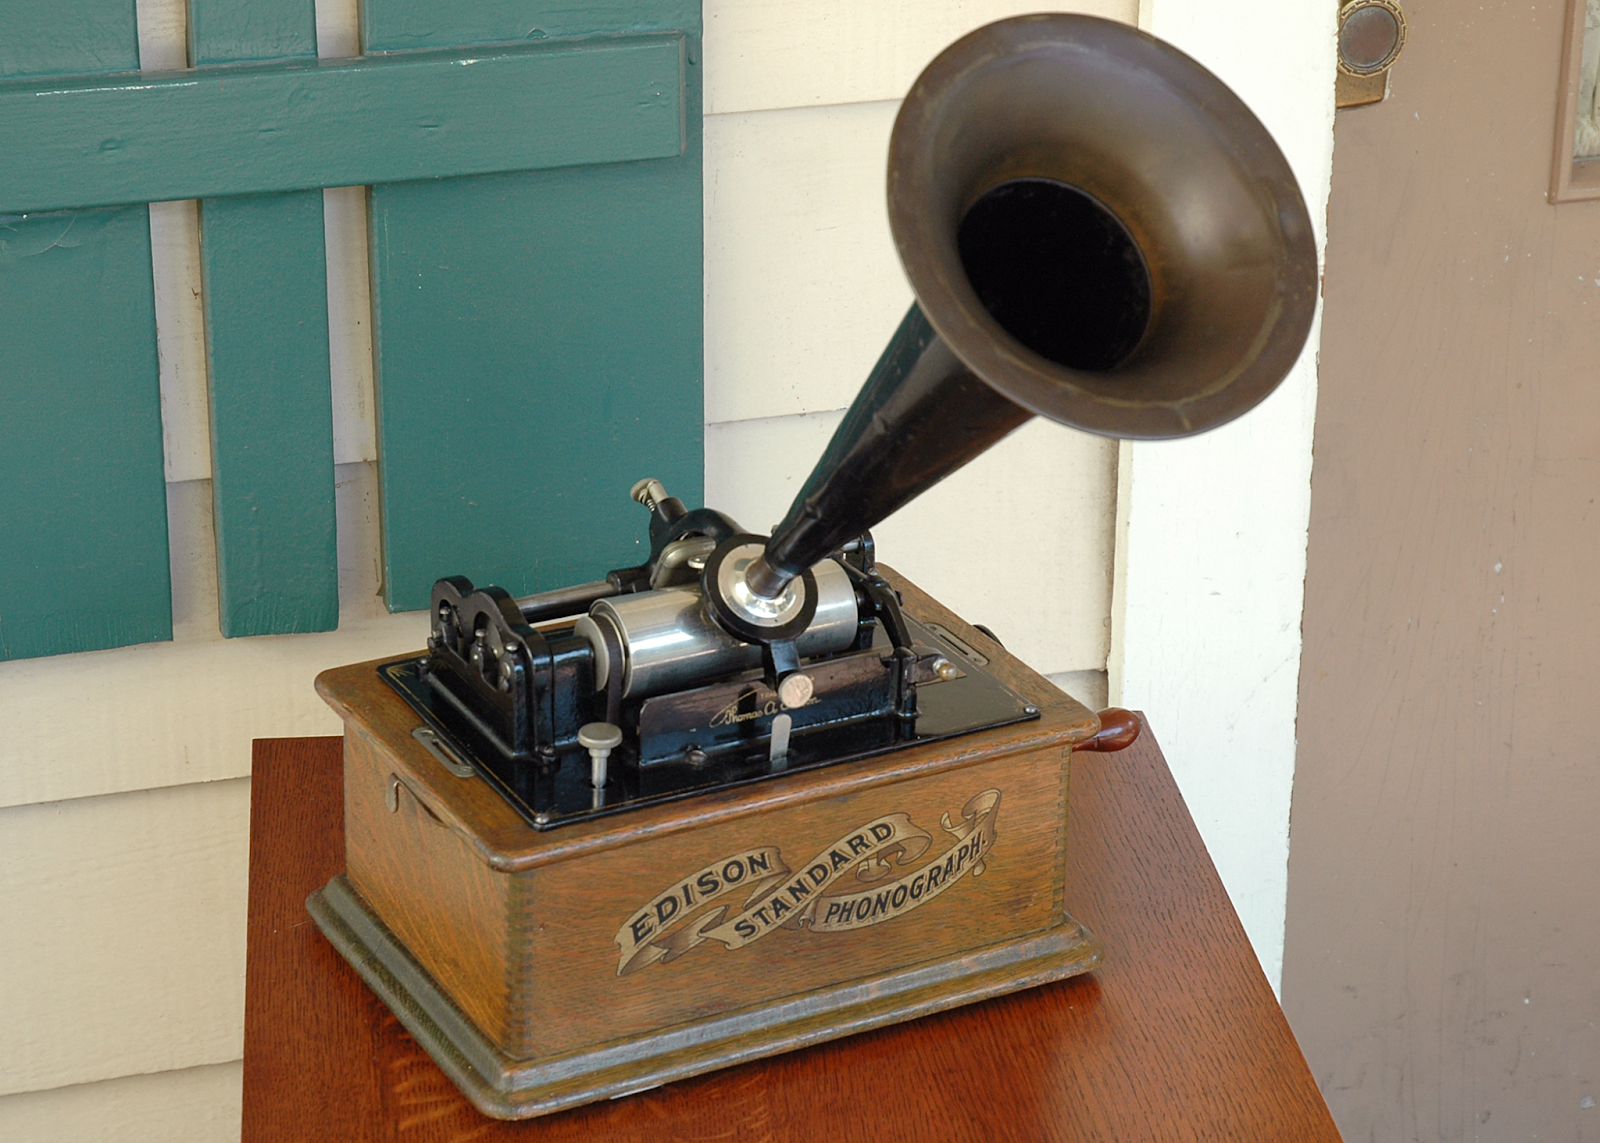 Фонограф звук. Edison Standard Phonograph. Фонограф Томаса Эдисона. Thomas Alva Edison Phonograph. 1878 Эдисон продемонстрировал Фонограф.